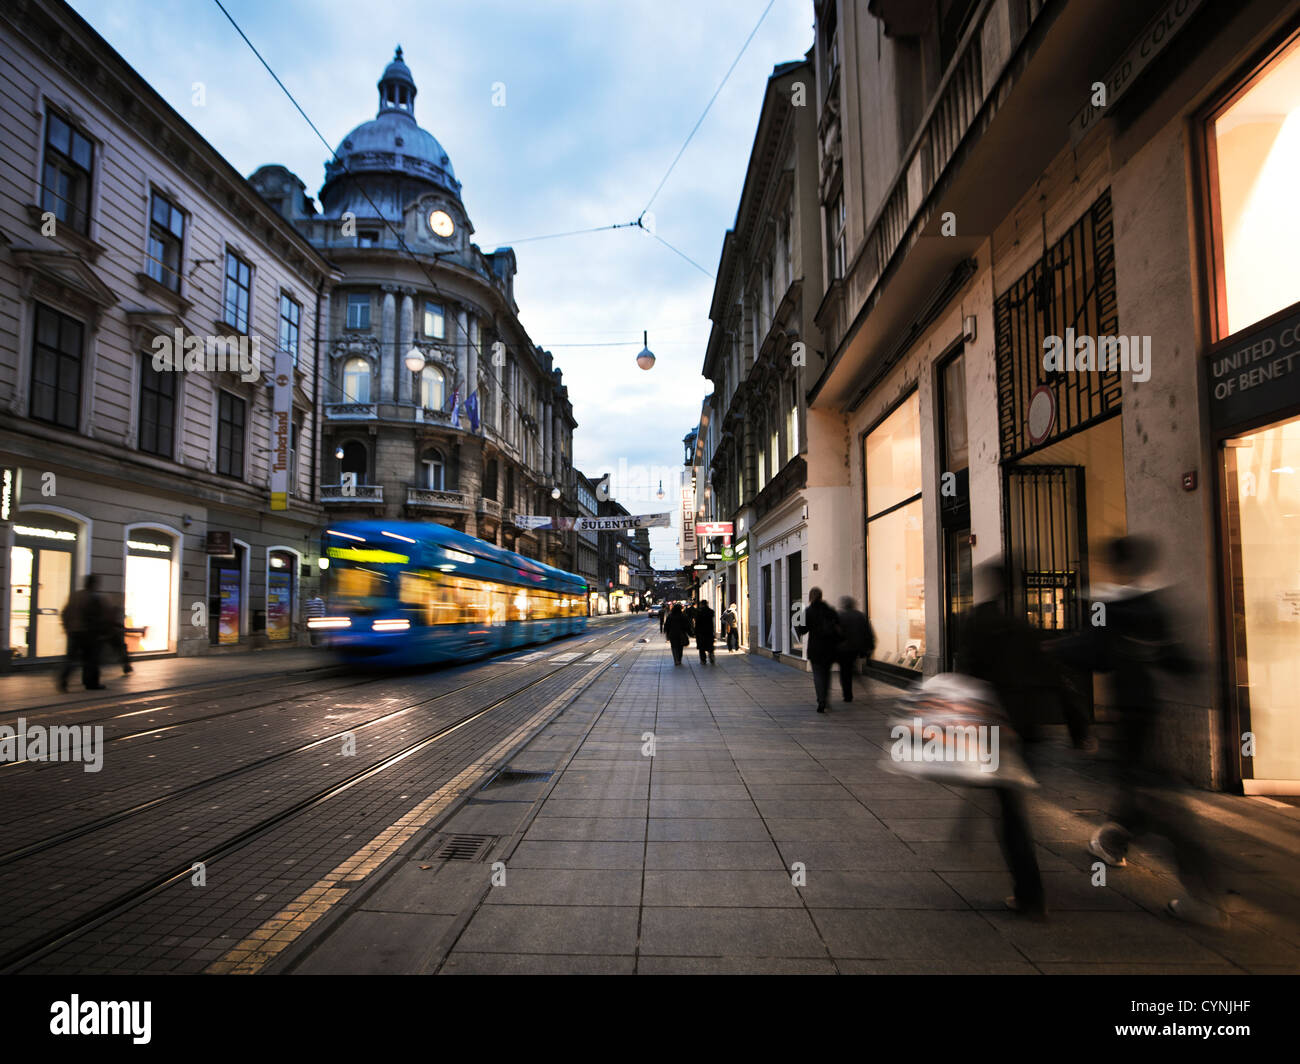 Ilica street in Zagreb Stock Photo - Alamy